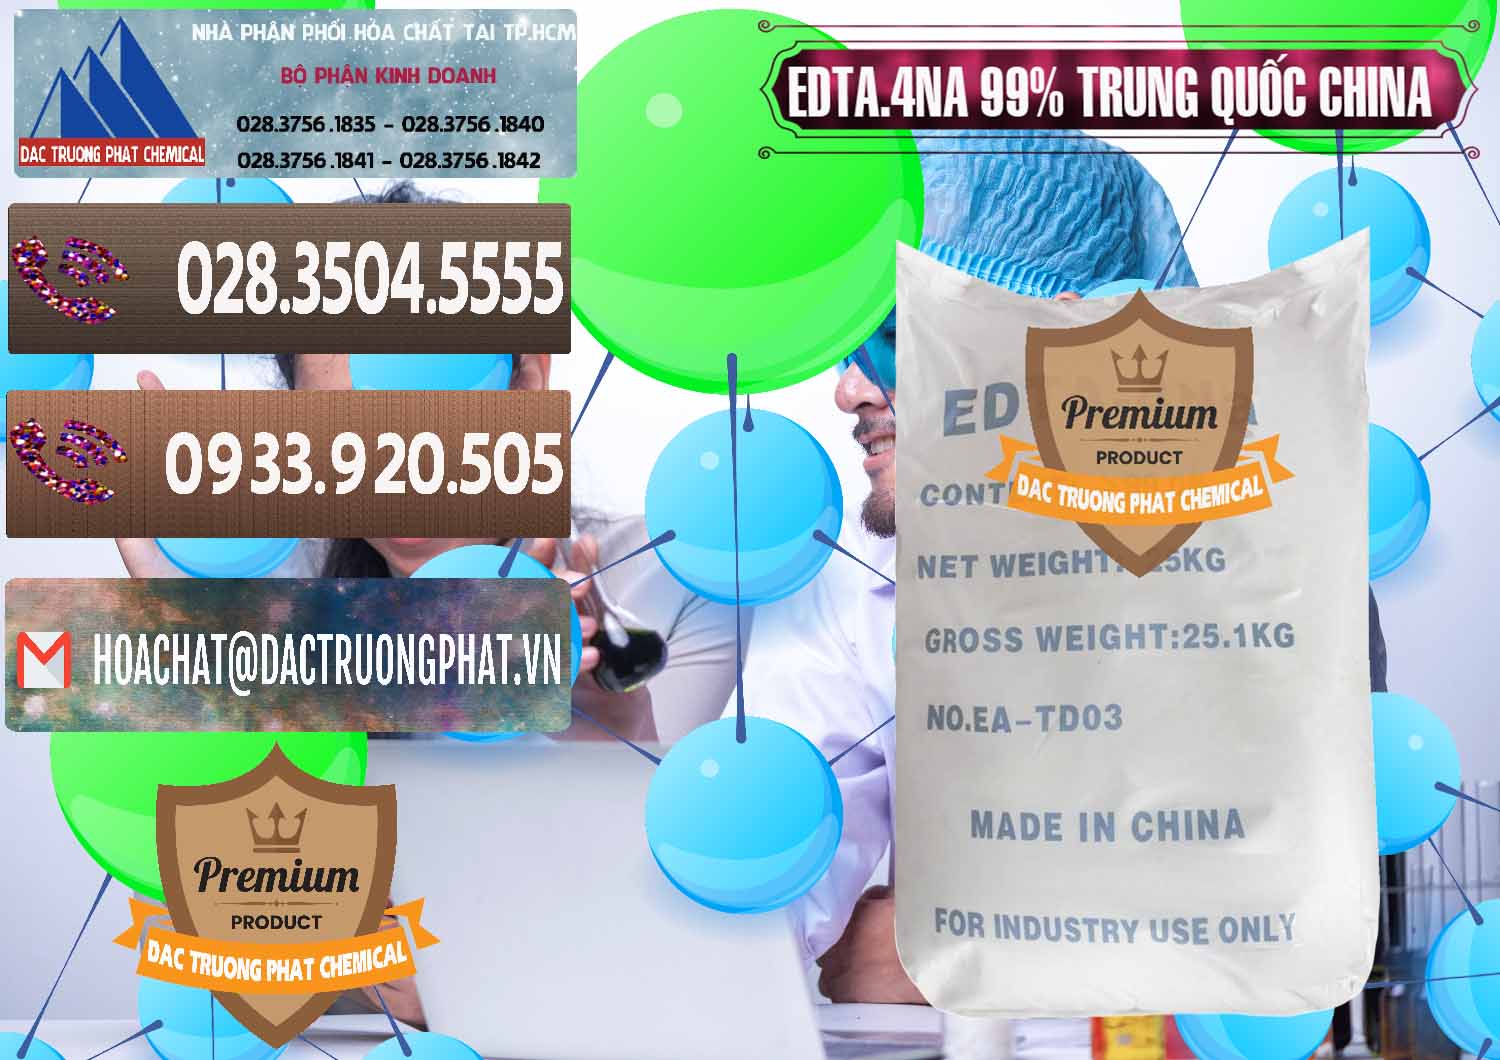 Đơn vị bán và cung ứng EDTA.4NA - EDTA Muối 99% Trung Quốc China - 0292 - Chuyên phân phối ( kinh doanh ) hóa chất tại TP.HCM - hoachatviet.net